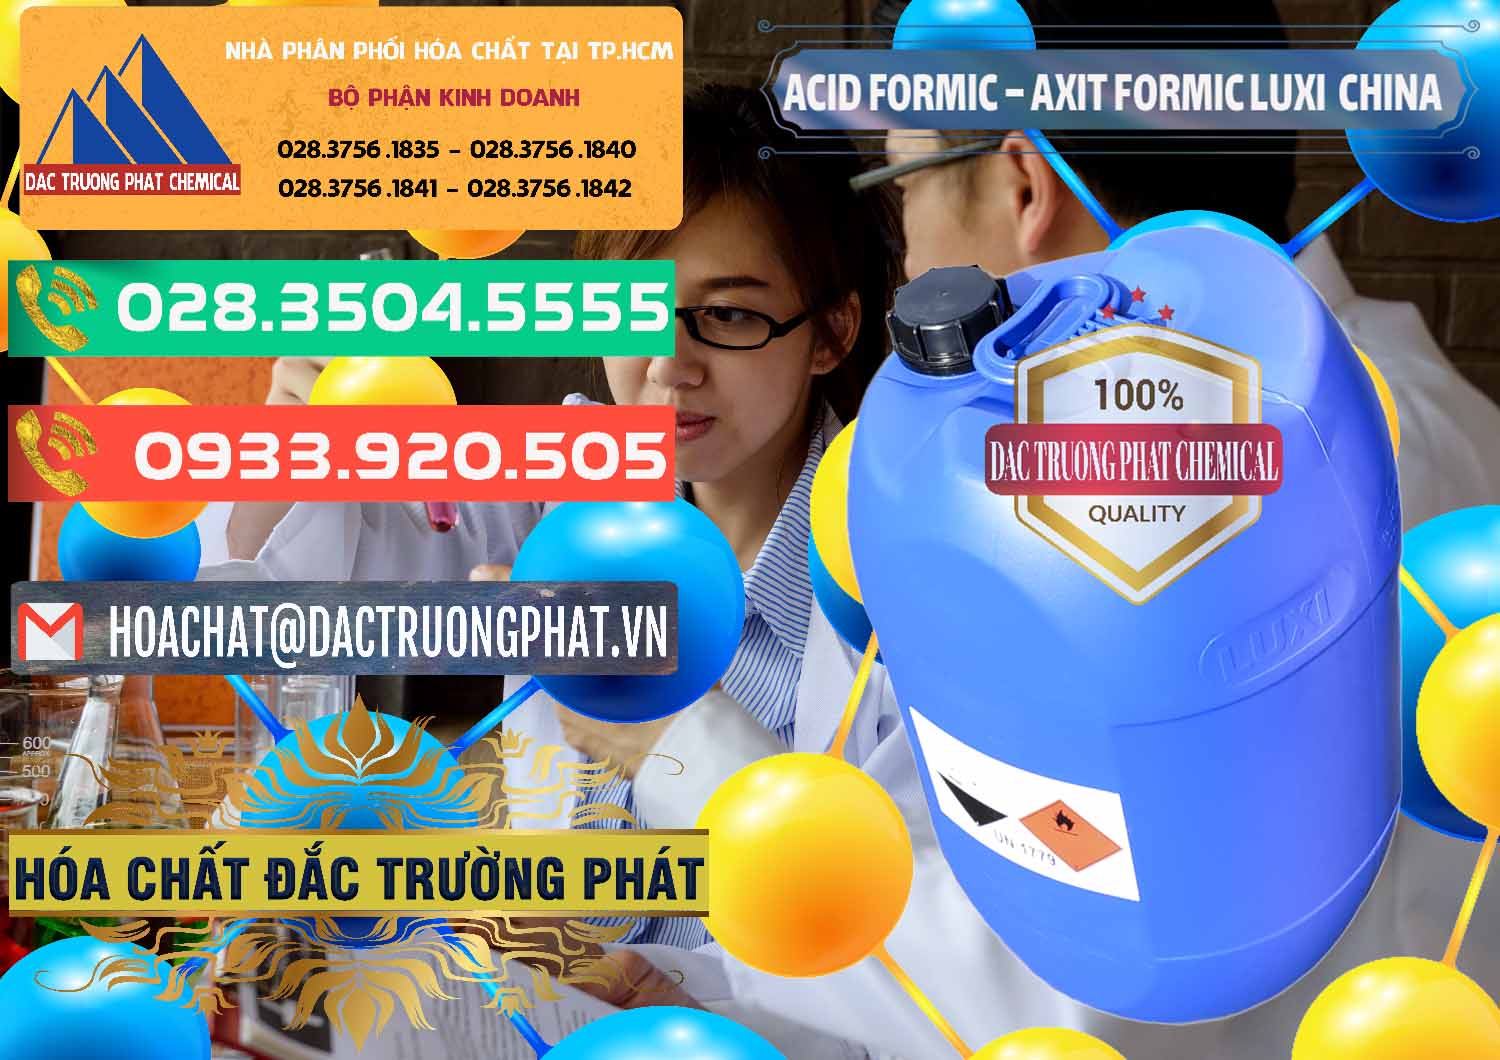 Cty kinh doanh & bán Acid Formic - Axit Formic Luxi Trung Quốc China - 0029 - Đơn vị cung ứng & phân phối hóa chất tại TP.HCM - congtyhoachat.com.vn